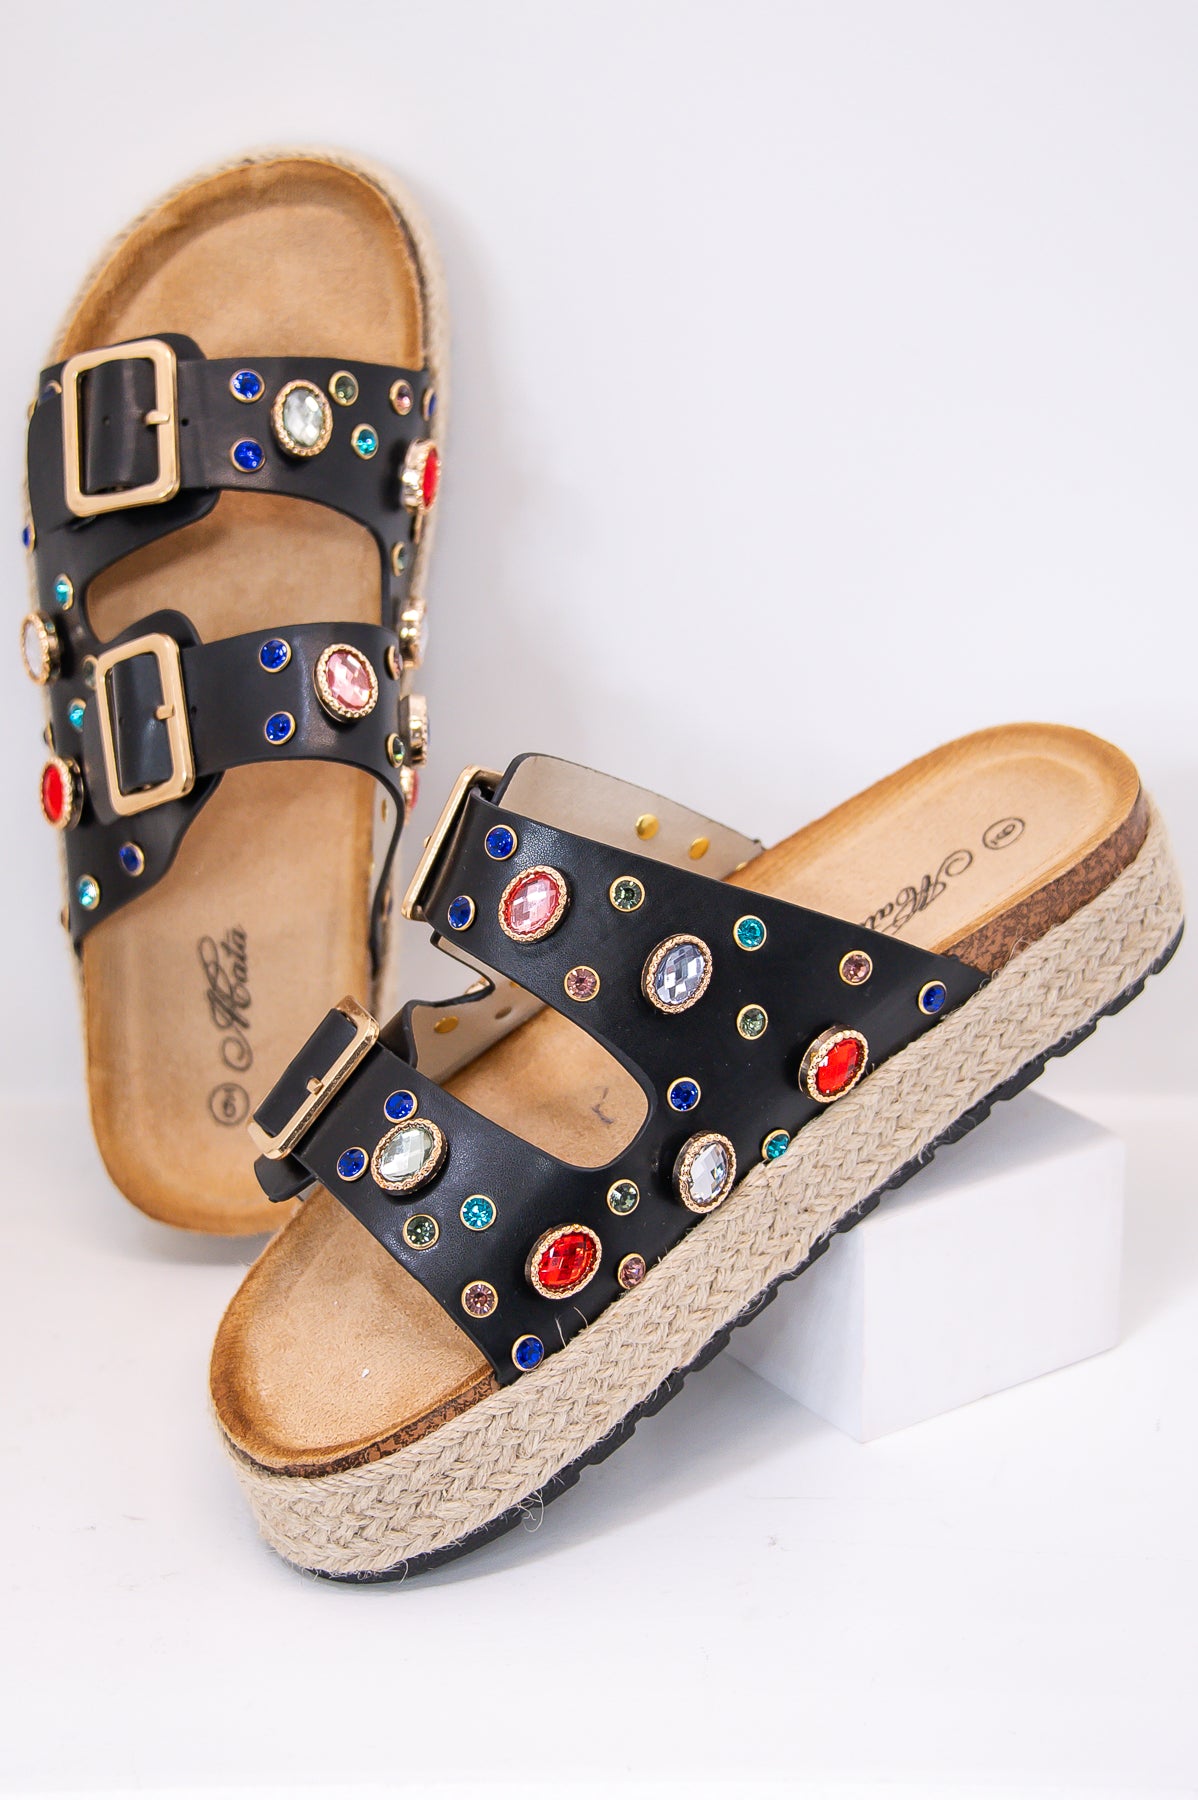 Dazzling Summer Style Black/Multi Color Bling Platform Sandals - SHO2686BK